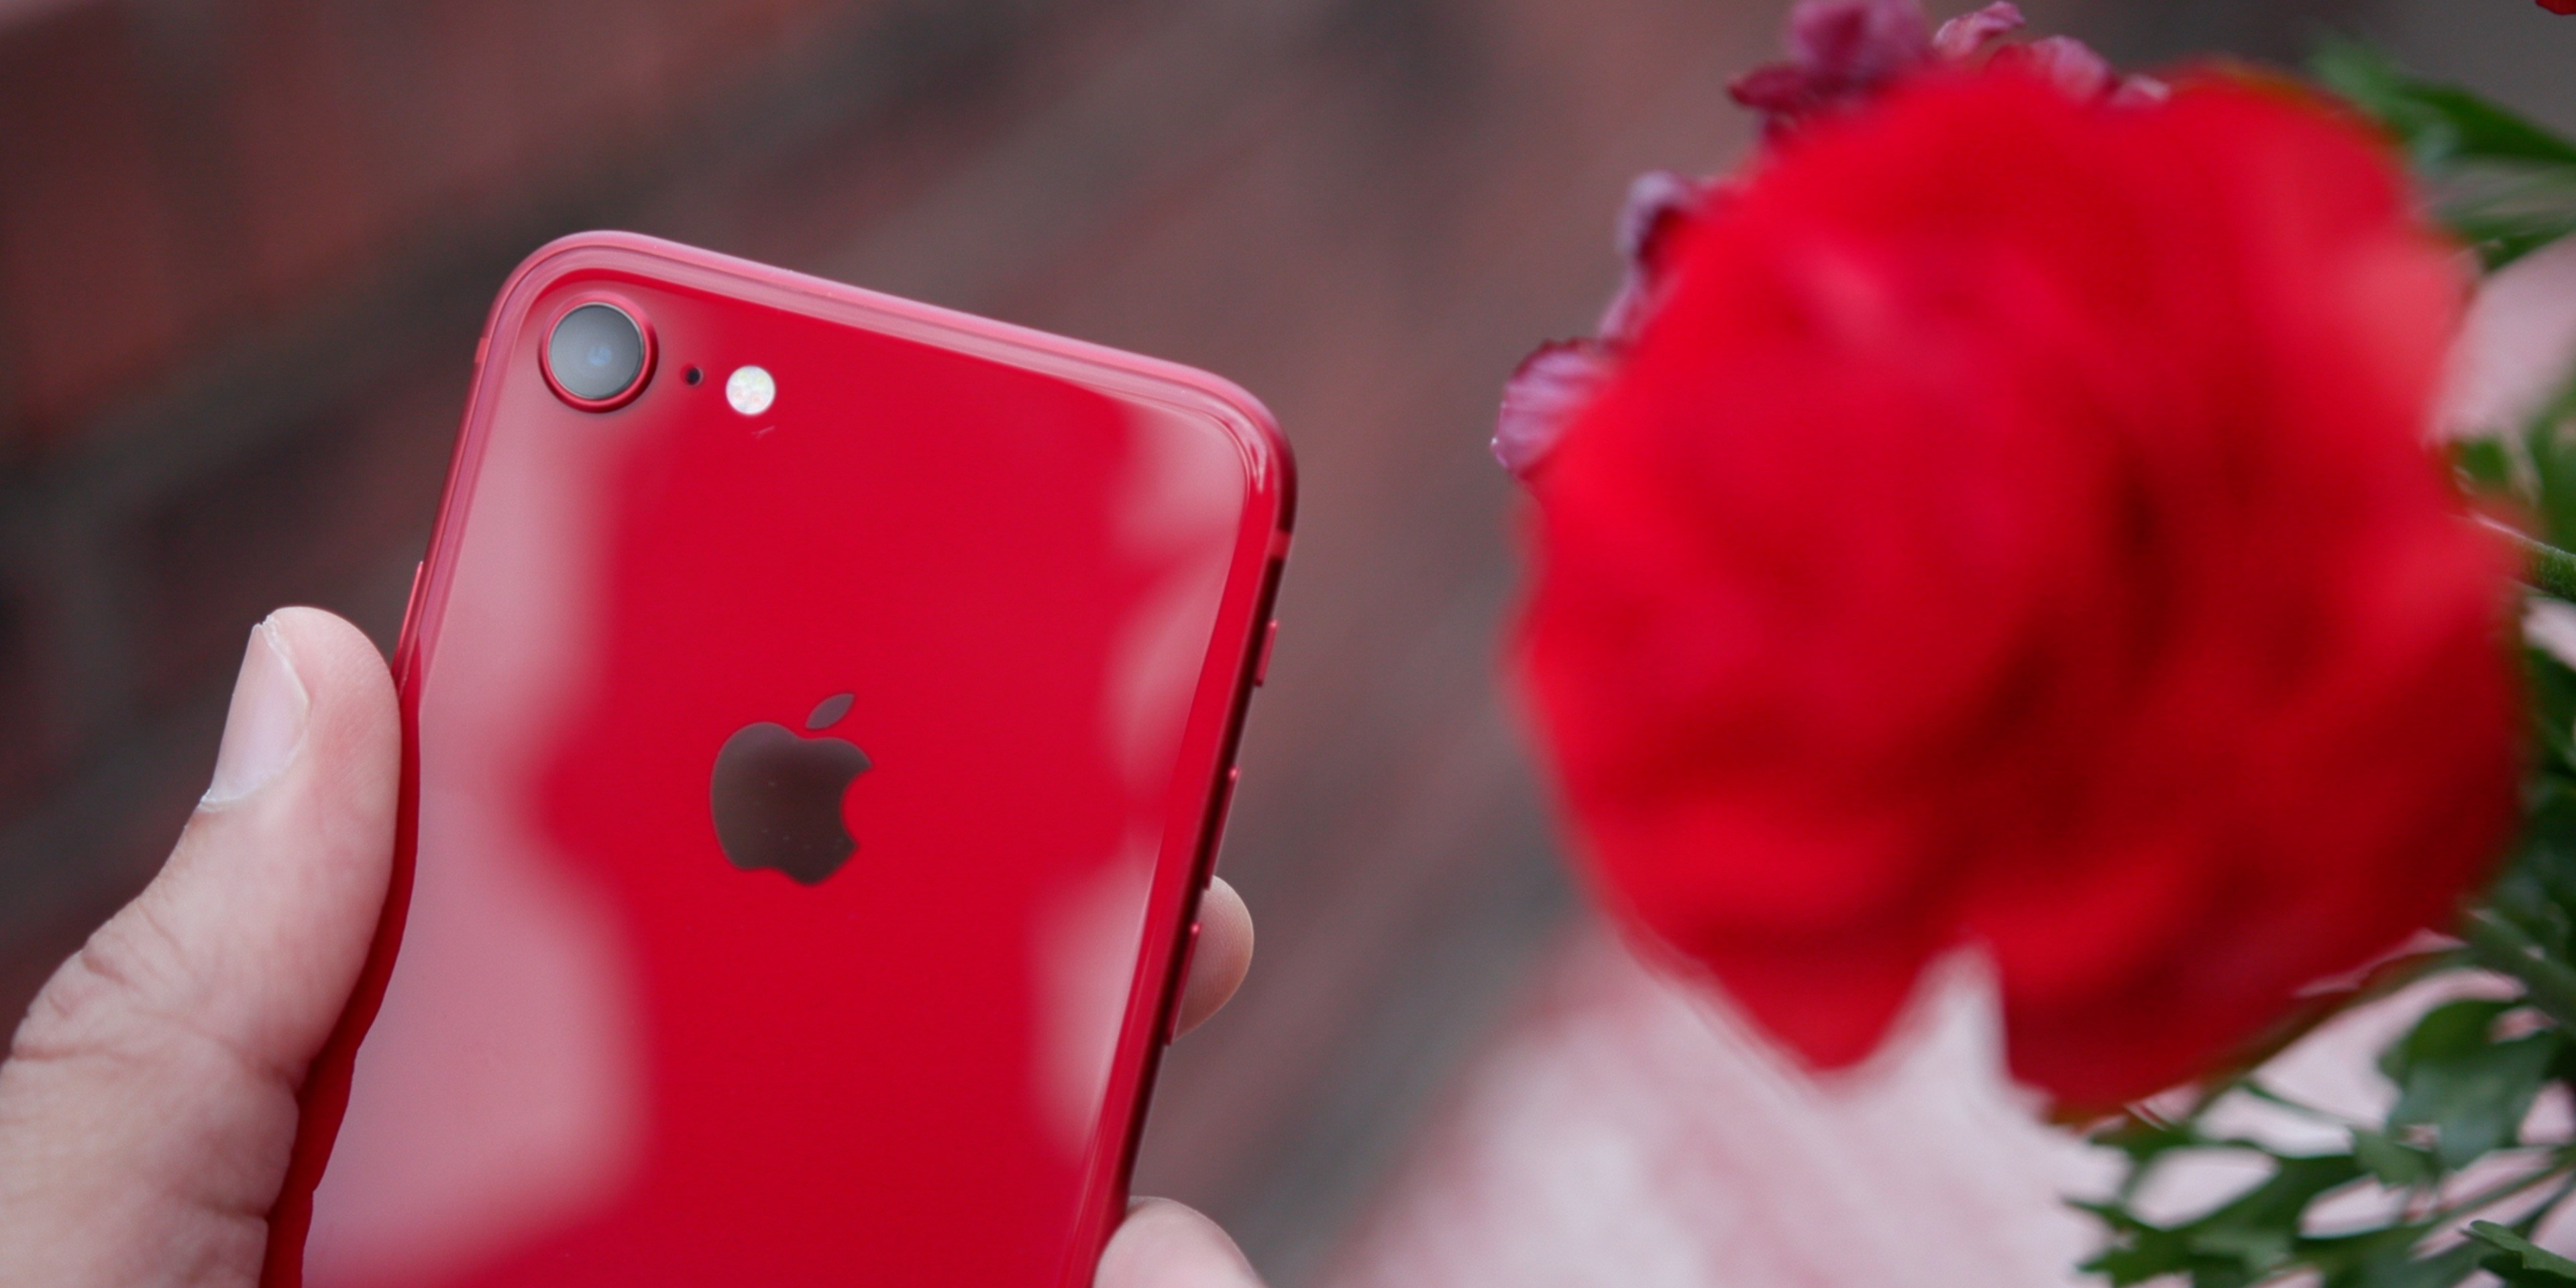 Ming-Chi Kuo: iPhone SE 2 thiết kế giống iPhone 8, giá khởi điểm 399 USD, tuỳ chọn bộ nhớ 64/128GB và có màu đỏ